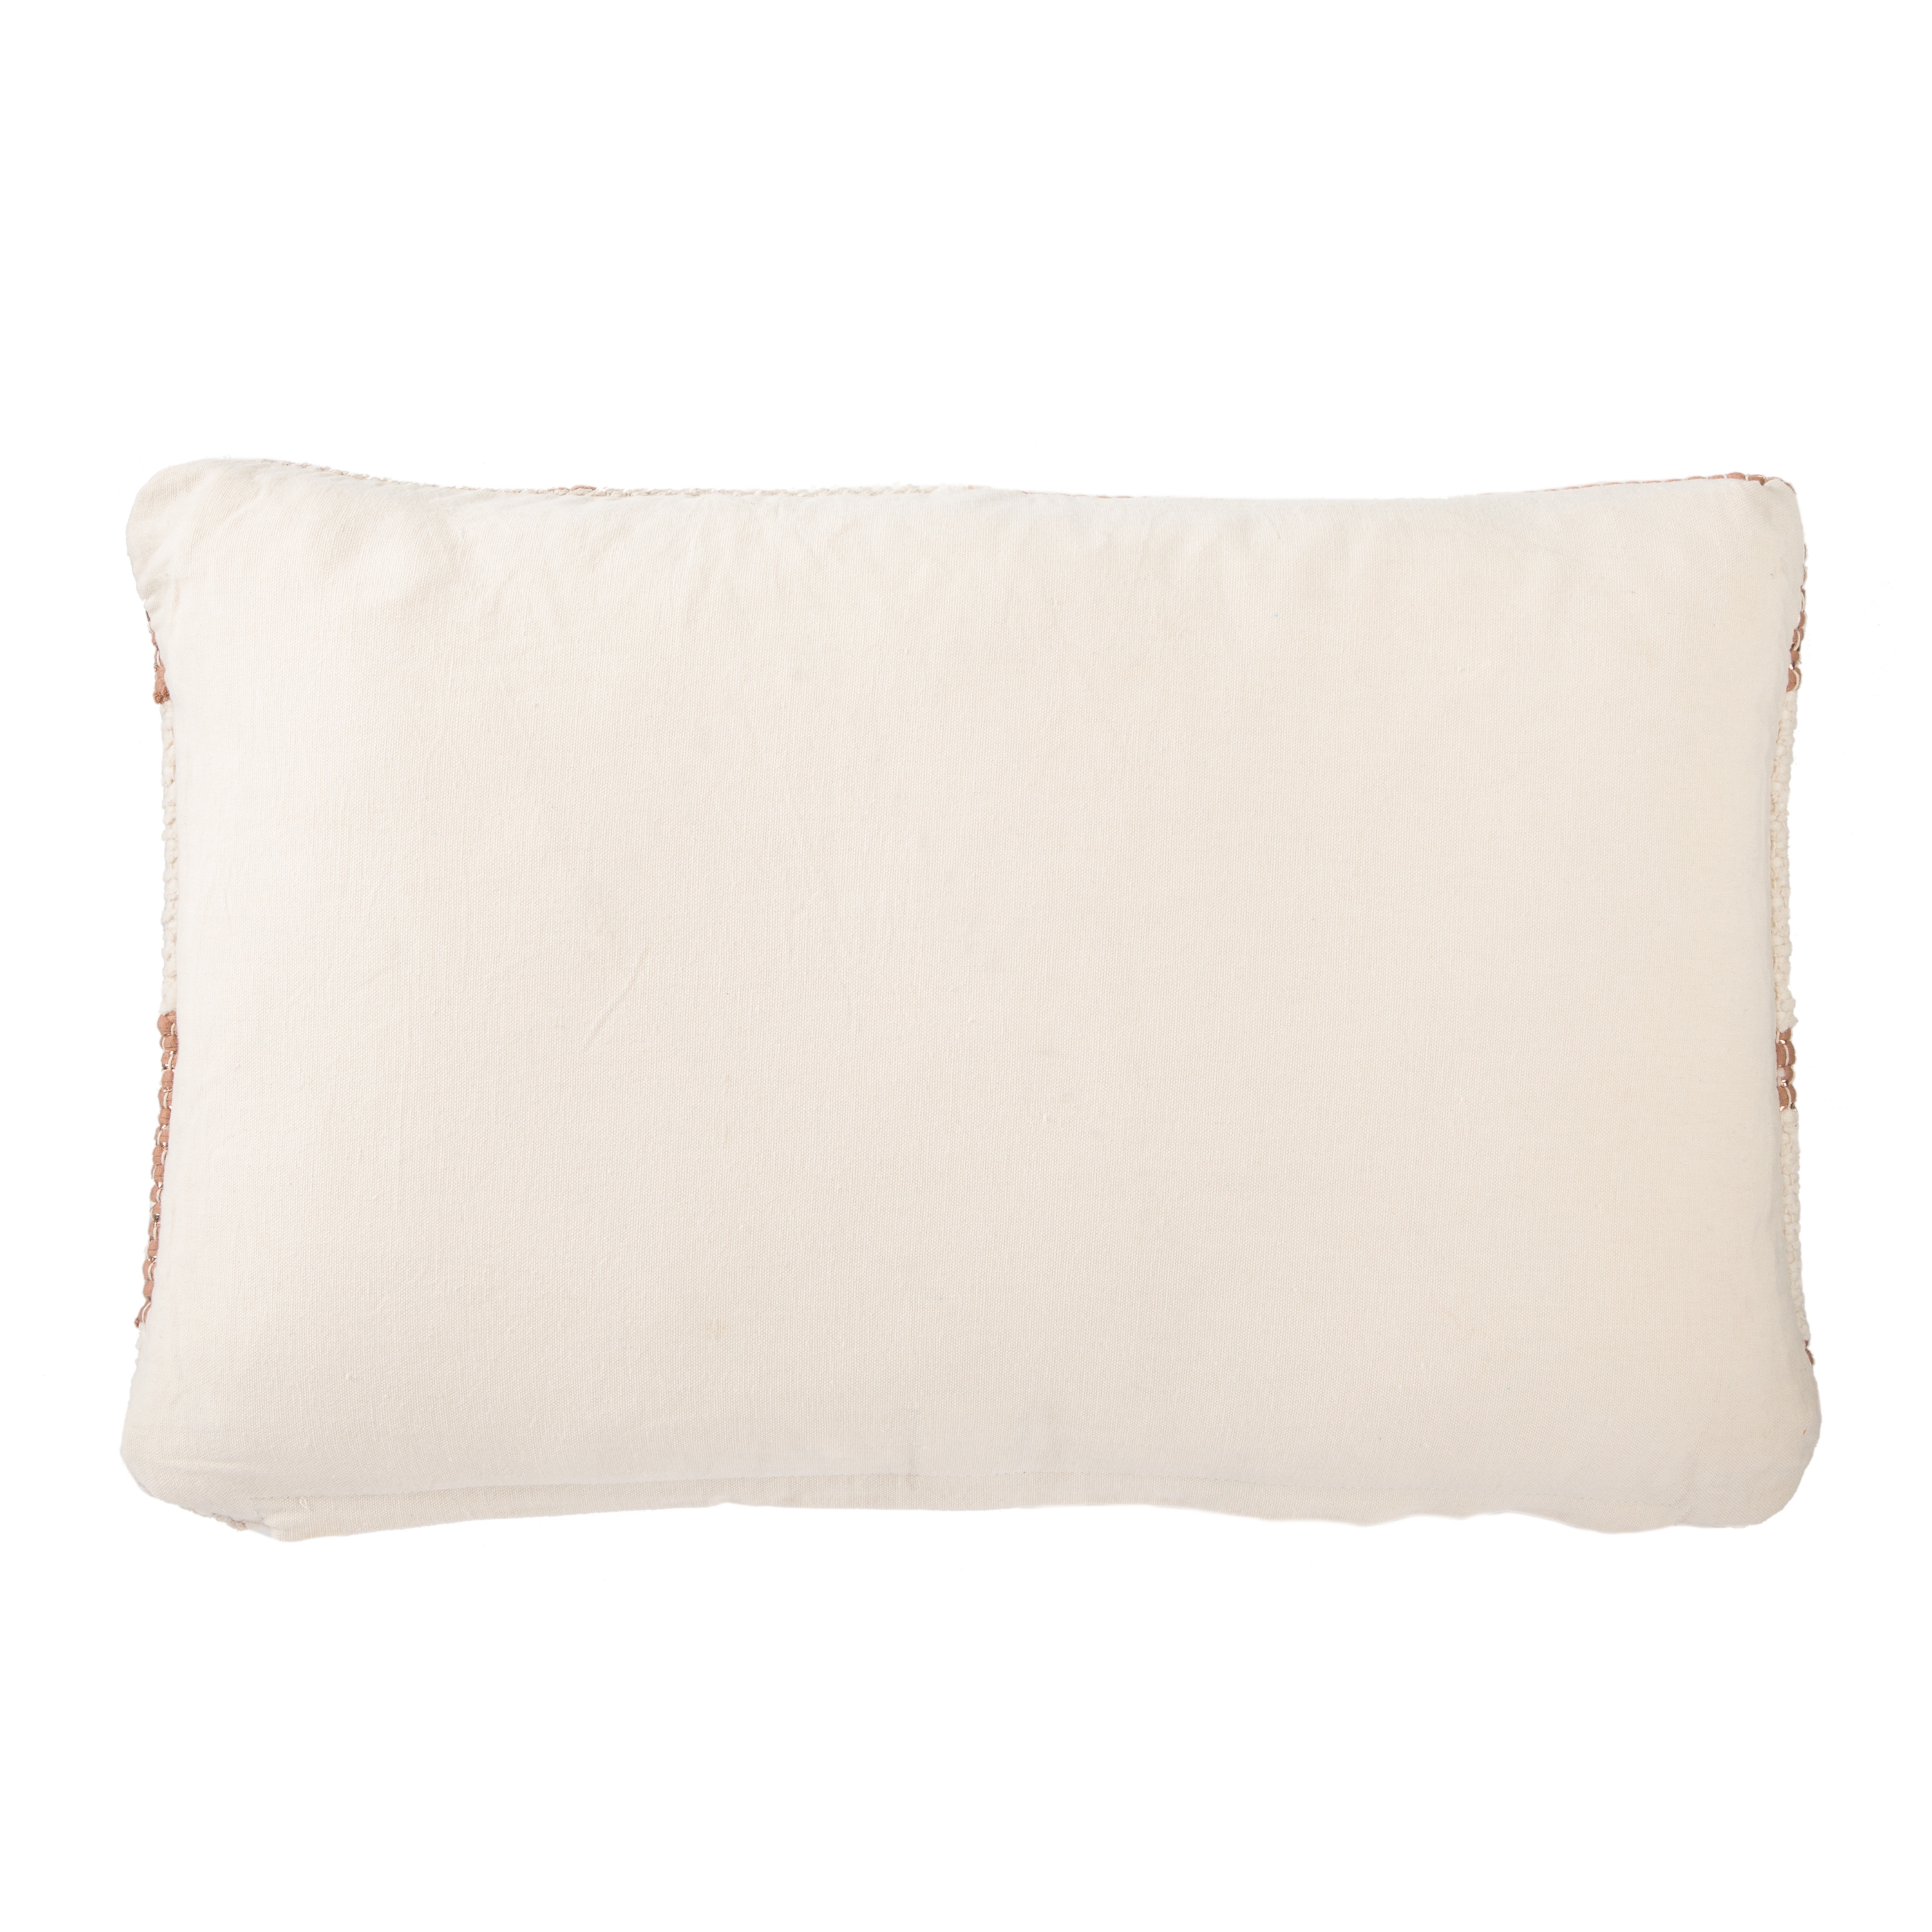 Cosmic Lumbar Pillow, Cream & Brick, 24" x 16" - Image 1